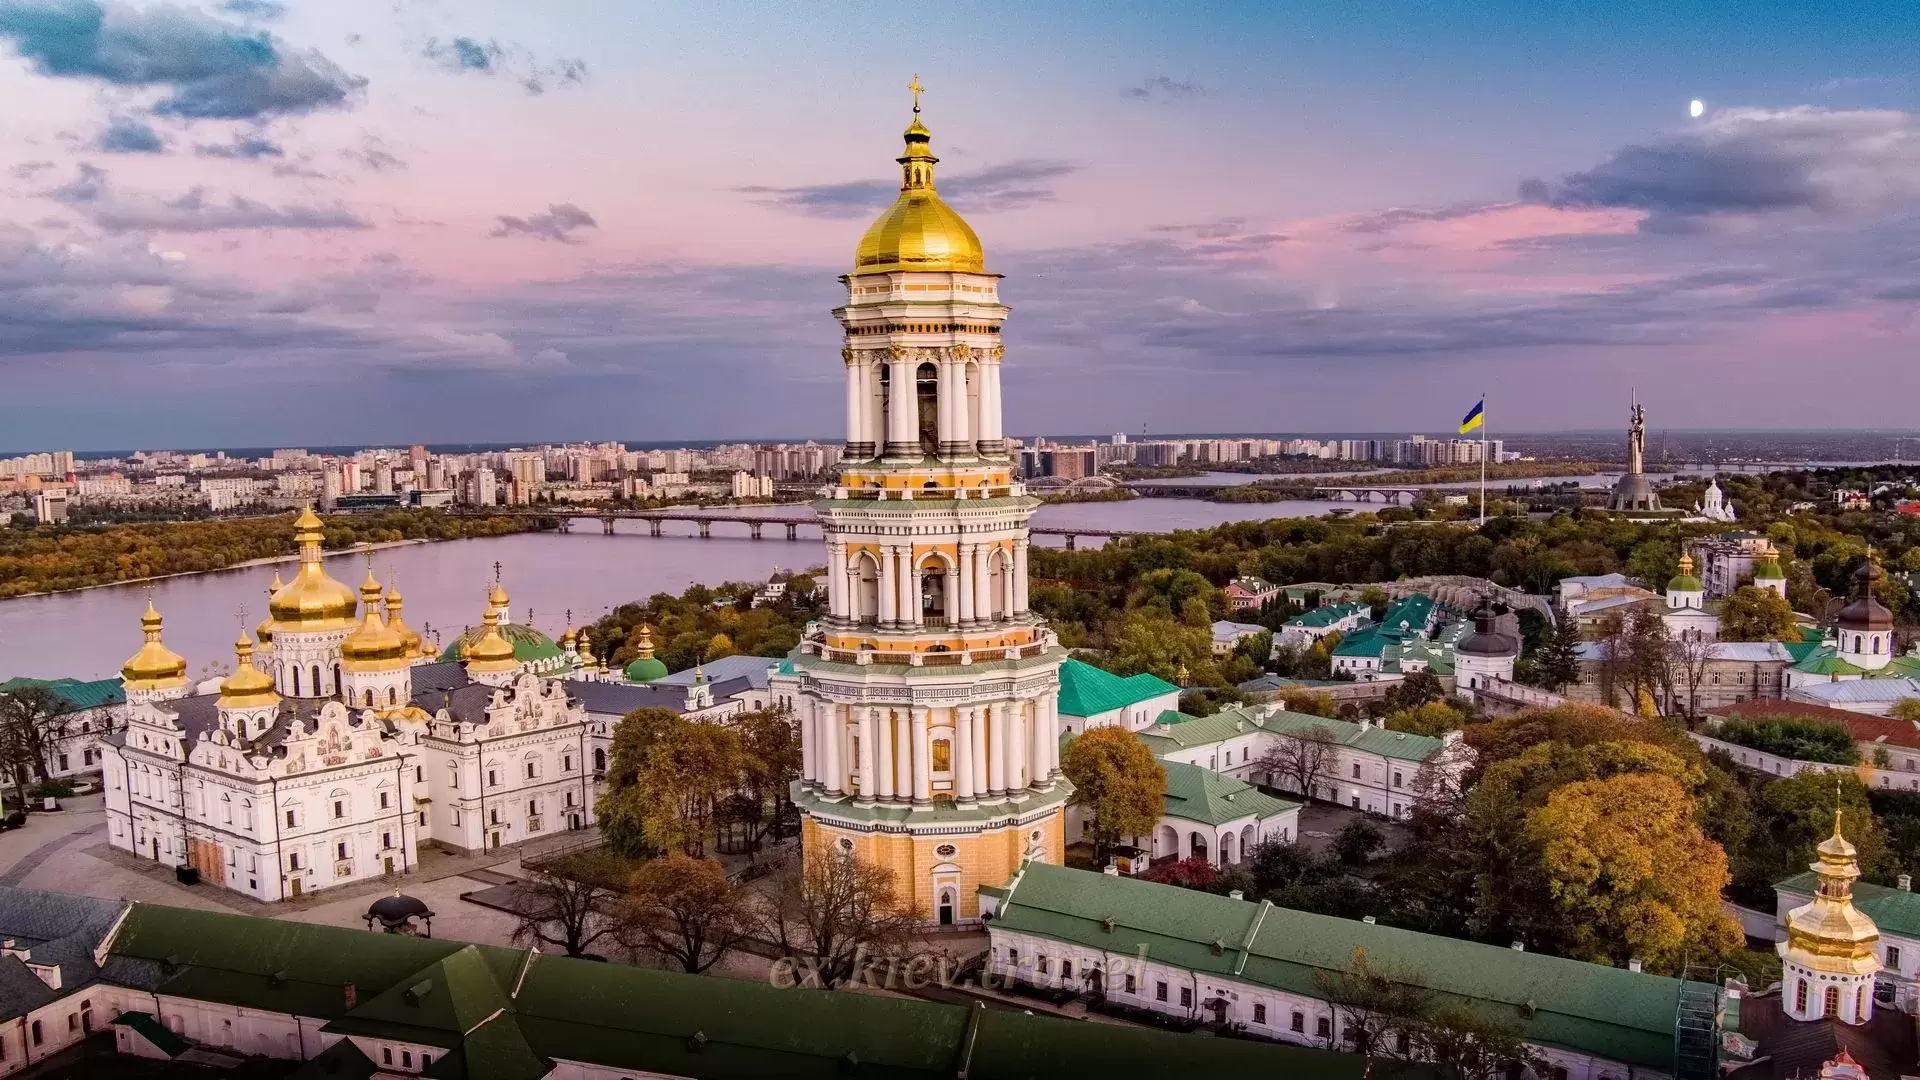 Tours in Ukraine in Kiev - Kiev Pechersk Lavra, bell tower